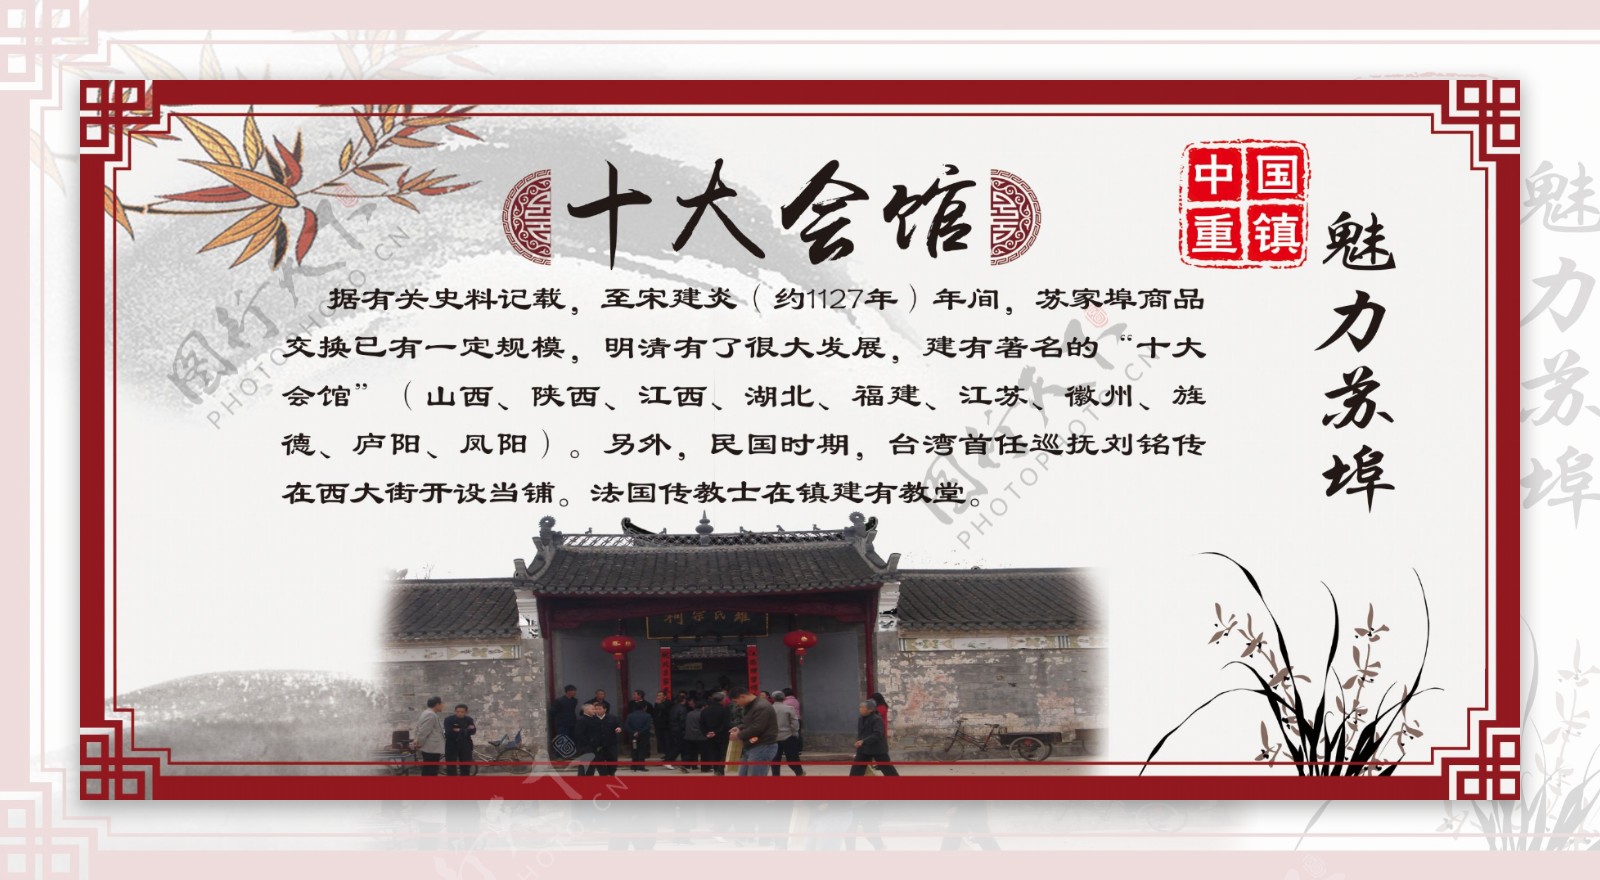 中国风特色古镇CMYK模式展板墙绘